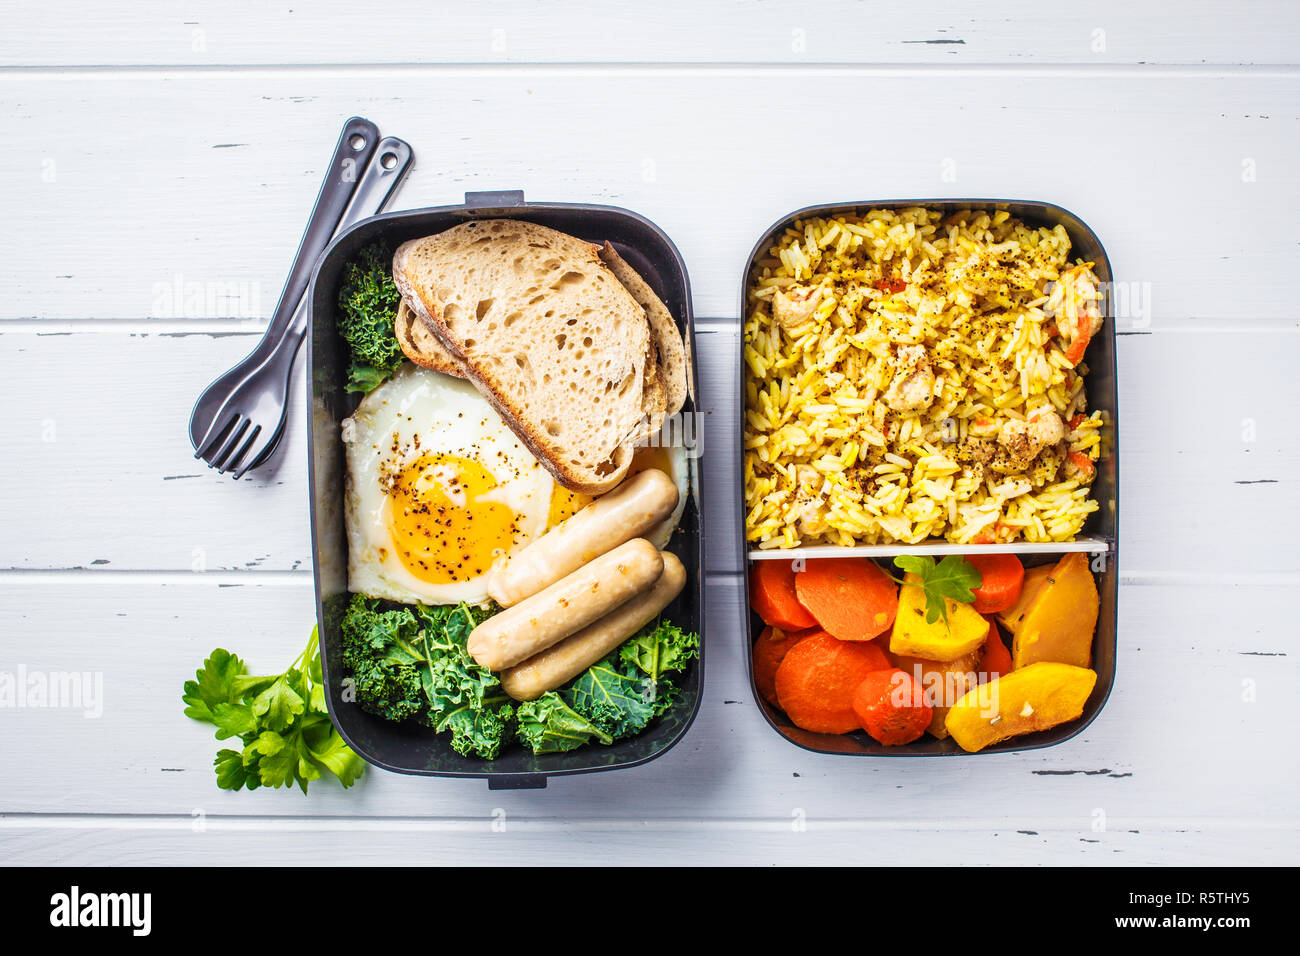 Conteneurs préparation des repas avec du riz avec du poulet, des légumes, des œufs, des saucisses et de la salade pour le petit-déjeuner et le déjeuner, frais généraux, l'espace de copie wtite woode Banque D'Images